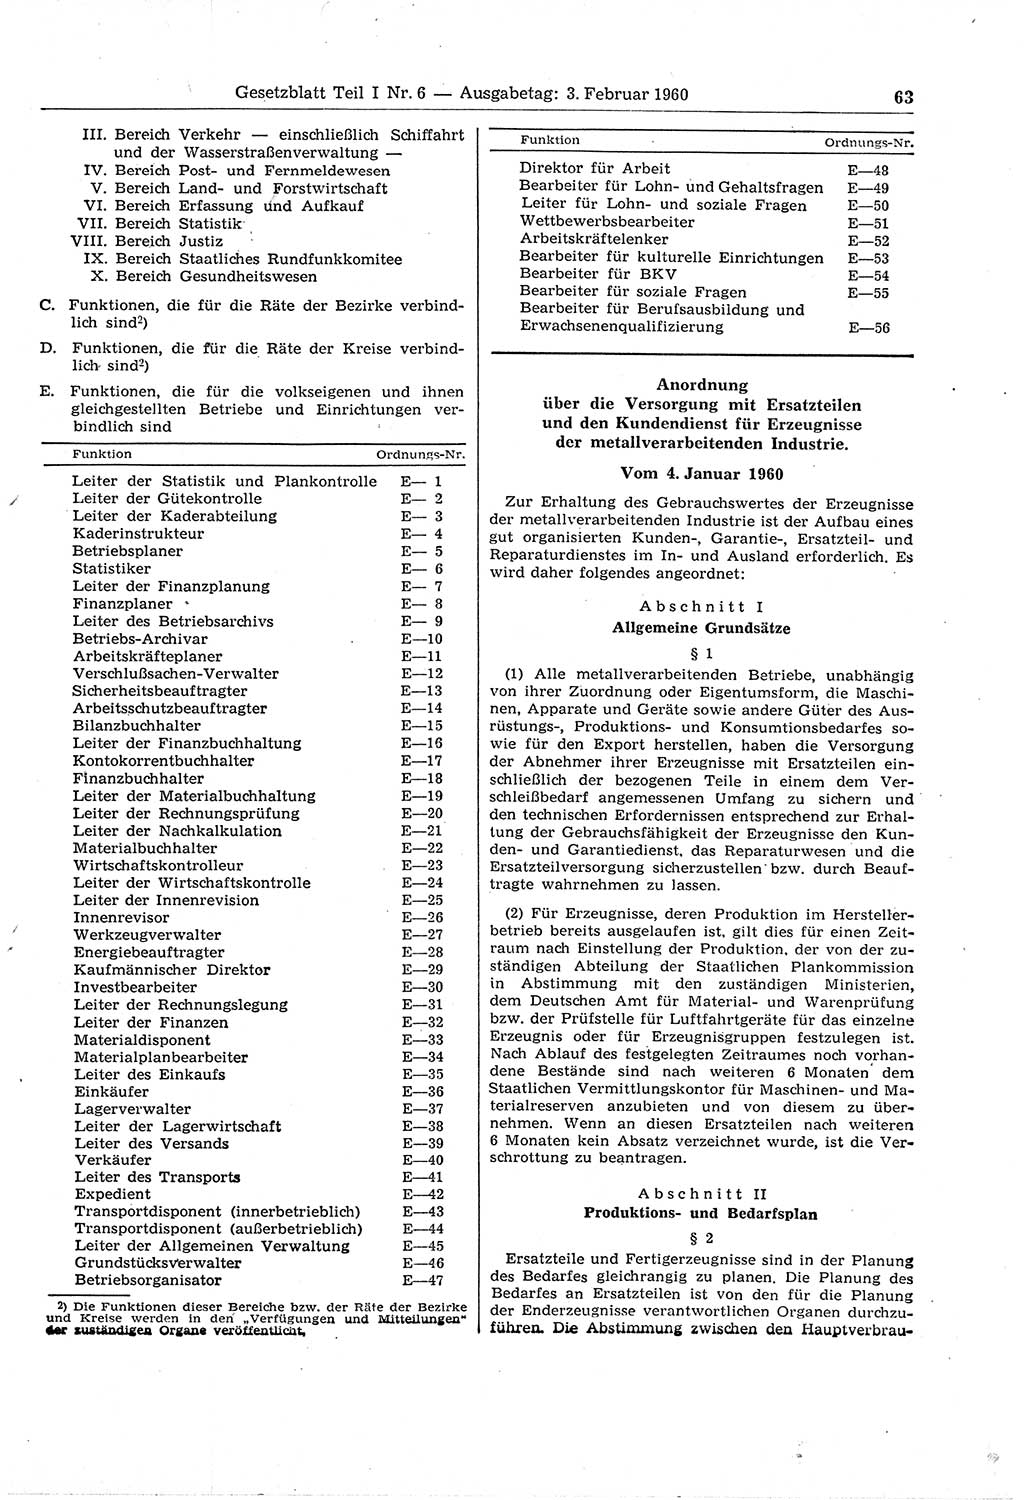 Gesetzblatt (GBl.) der Deutschen Demokratischen Republik (DDR) Teil Ⅰ 1960, Seite 63 (GBl. DDR Ⅰ 1960, S. 63)